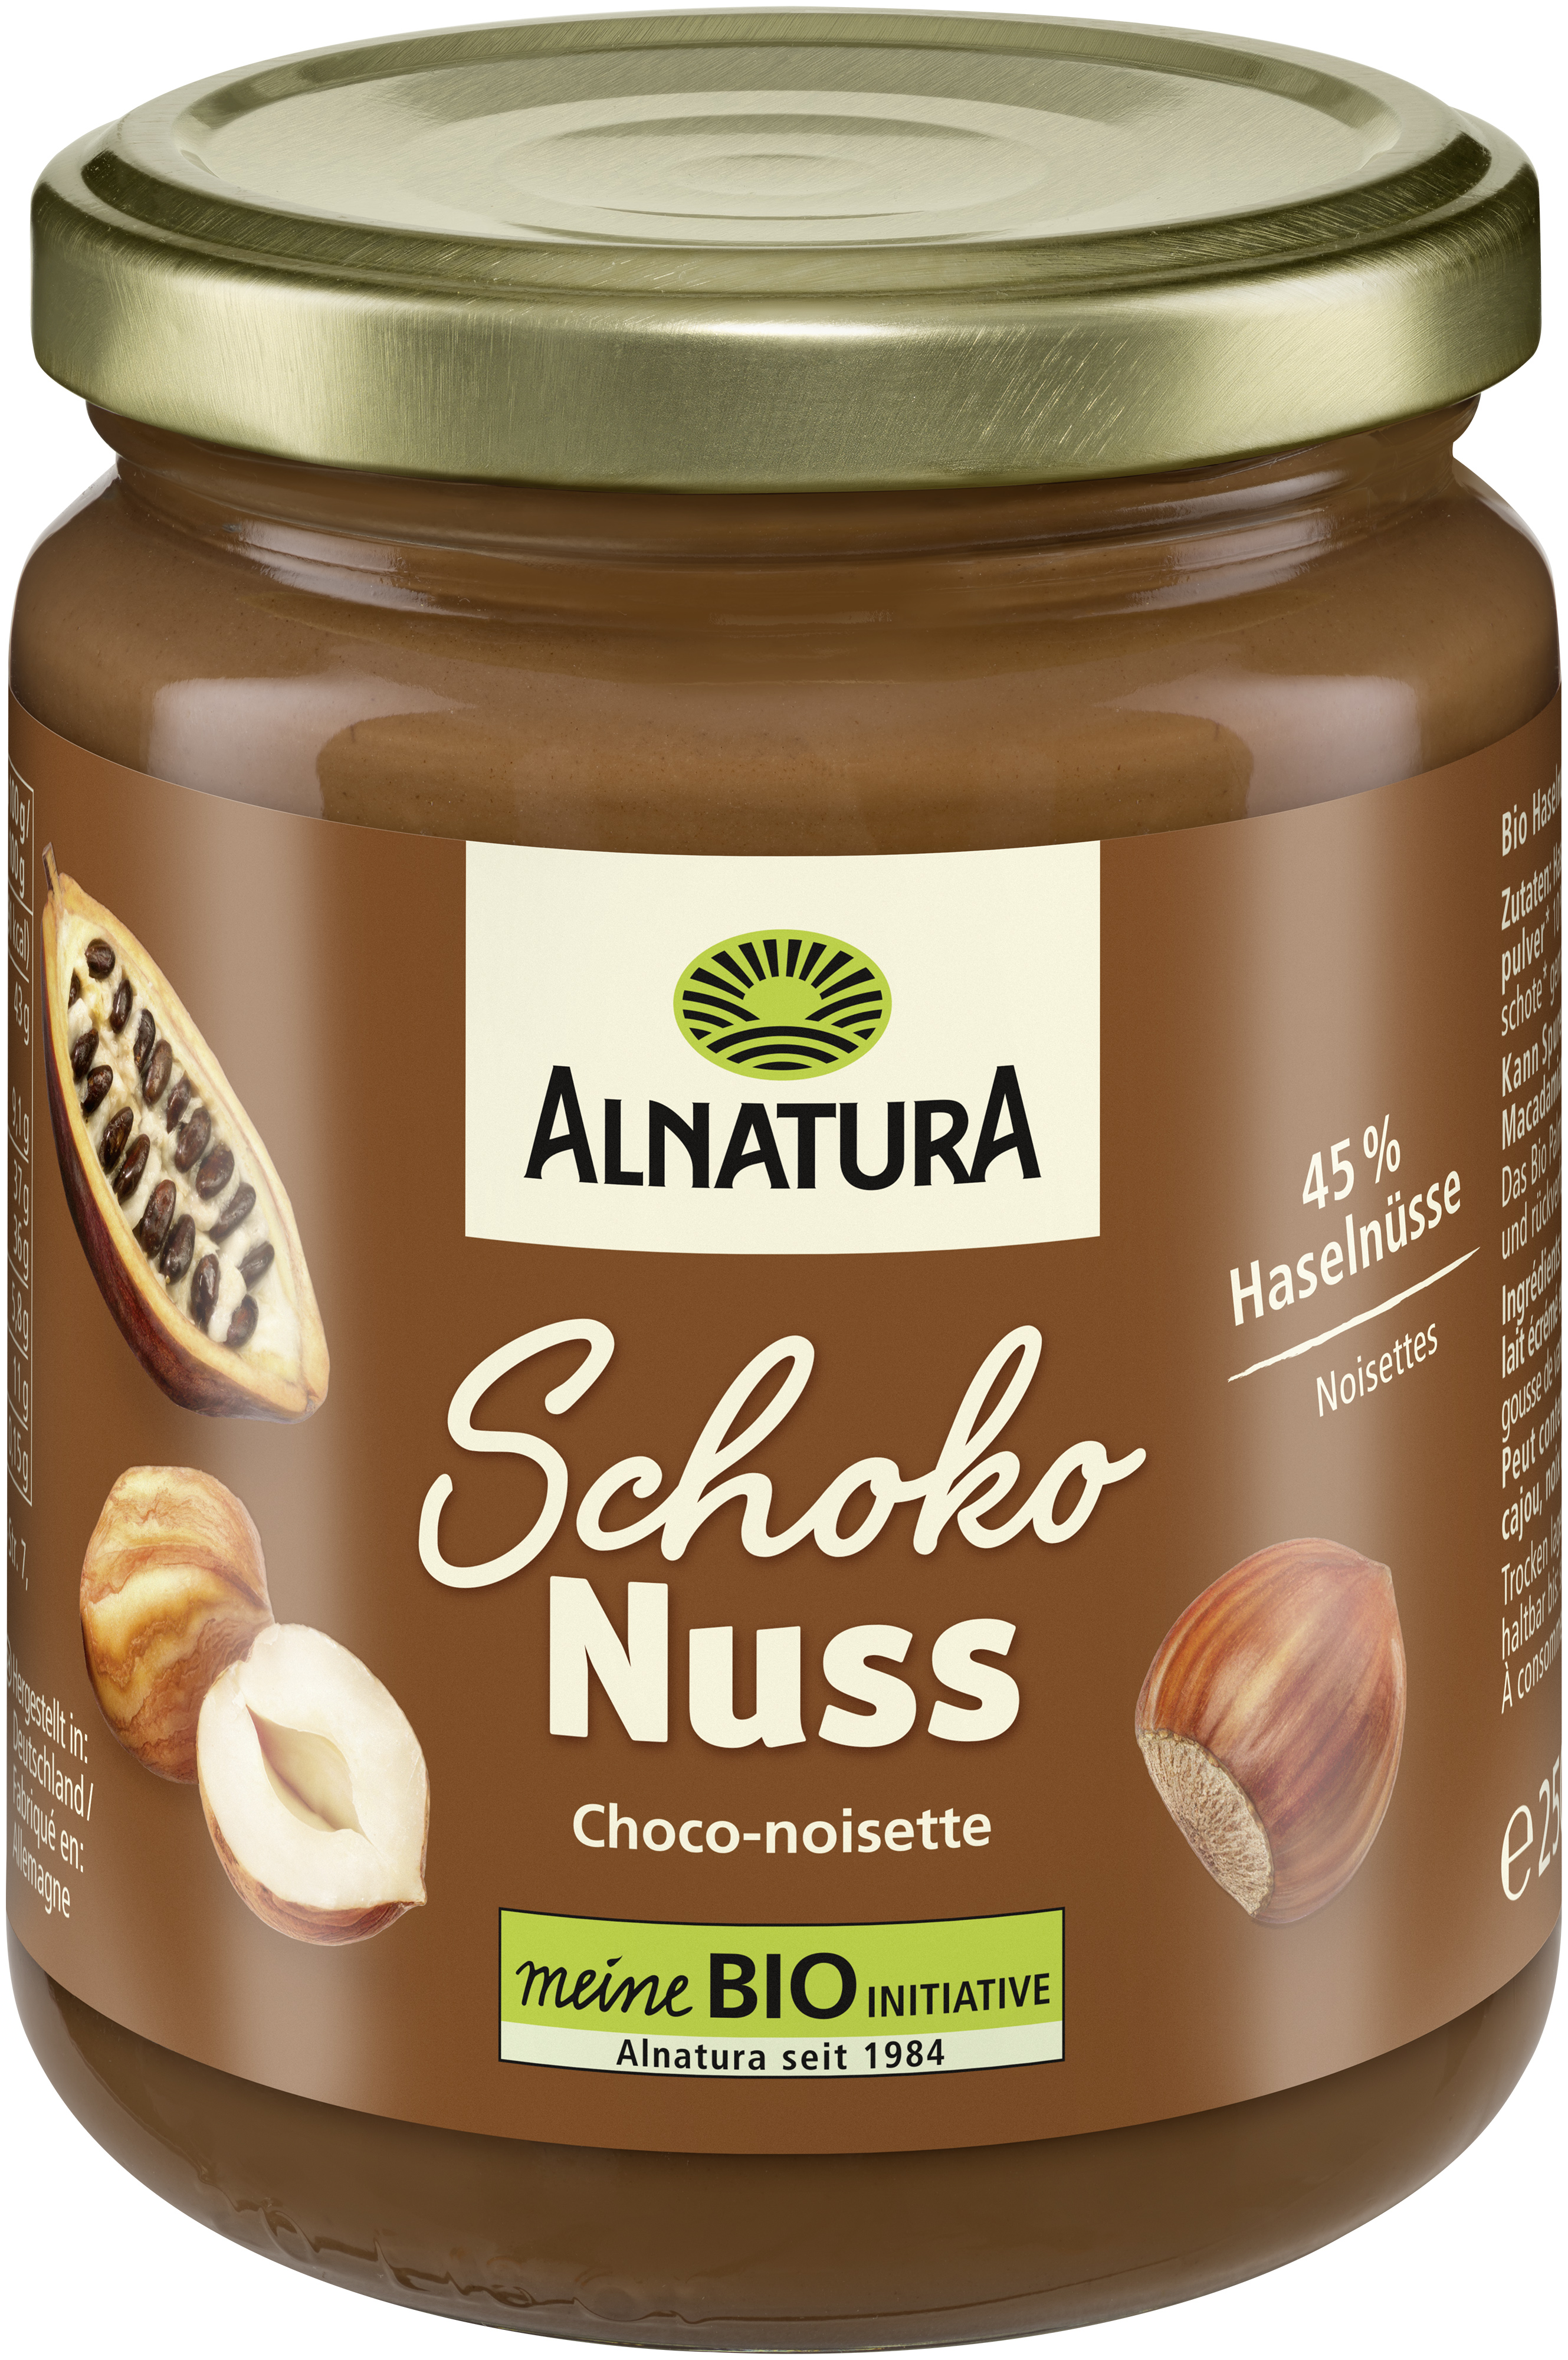 Schoko-Nuss-Creme (250g) in Bio-Qualität von Alnatura